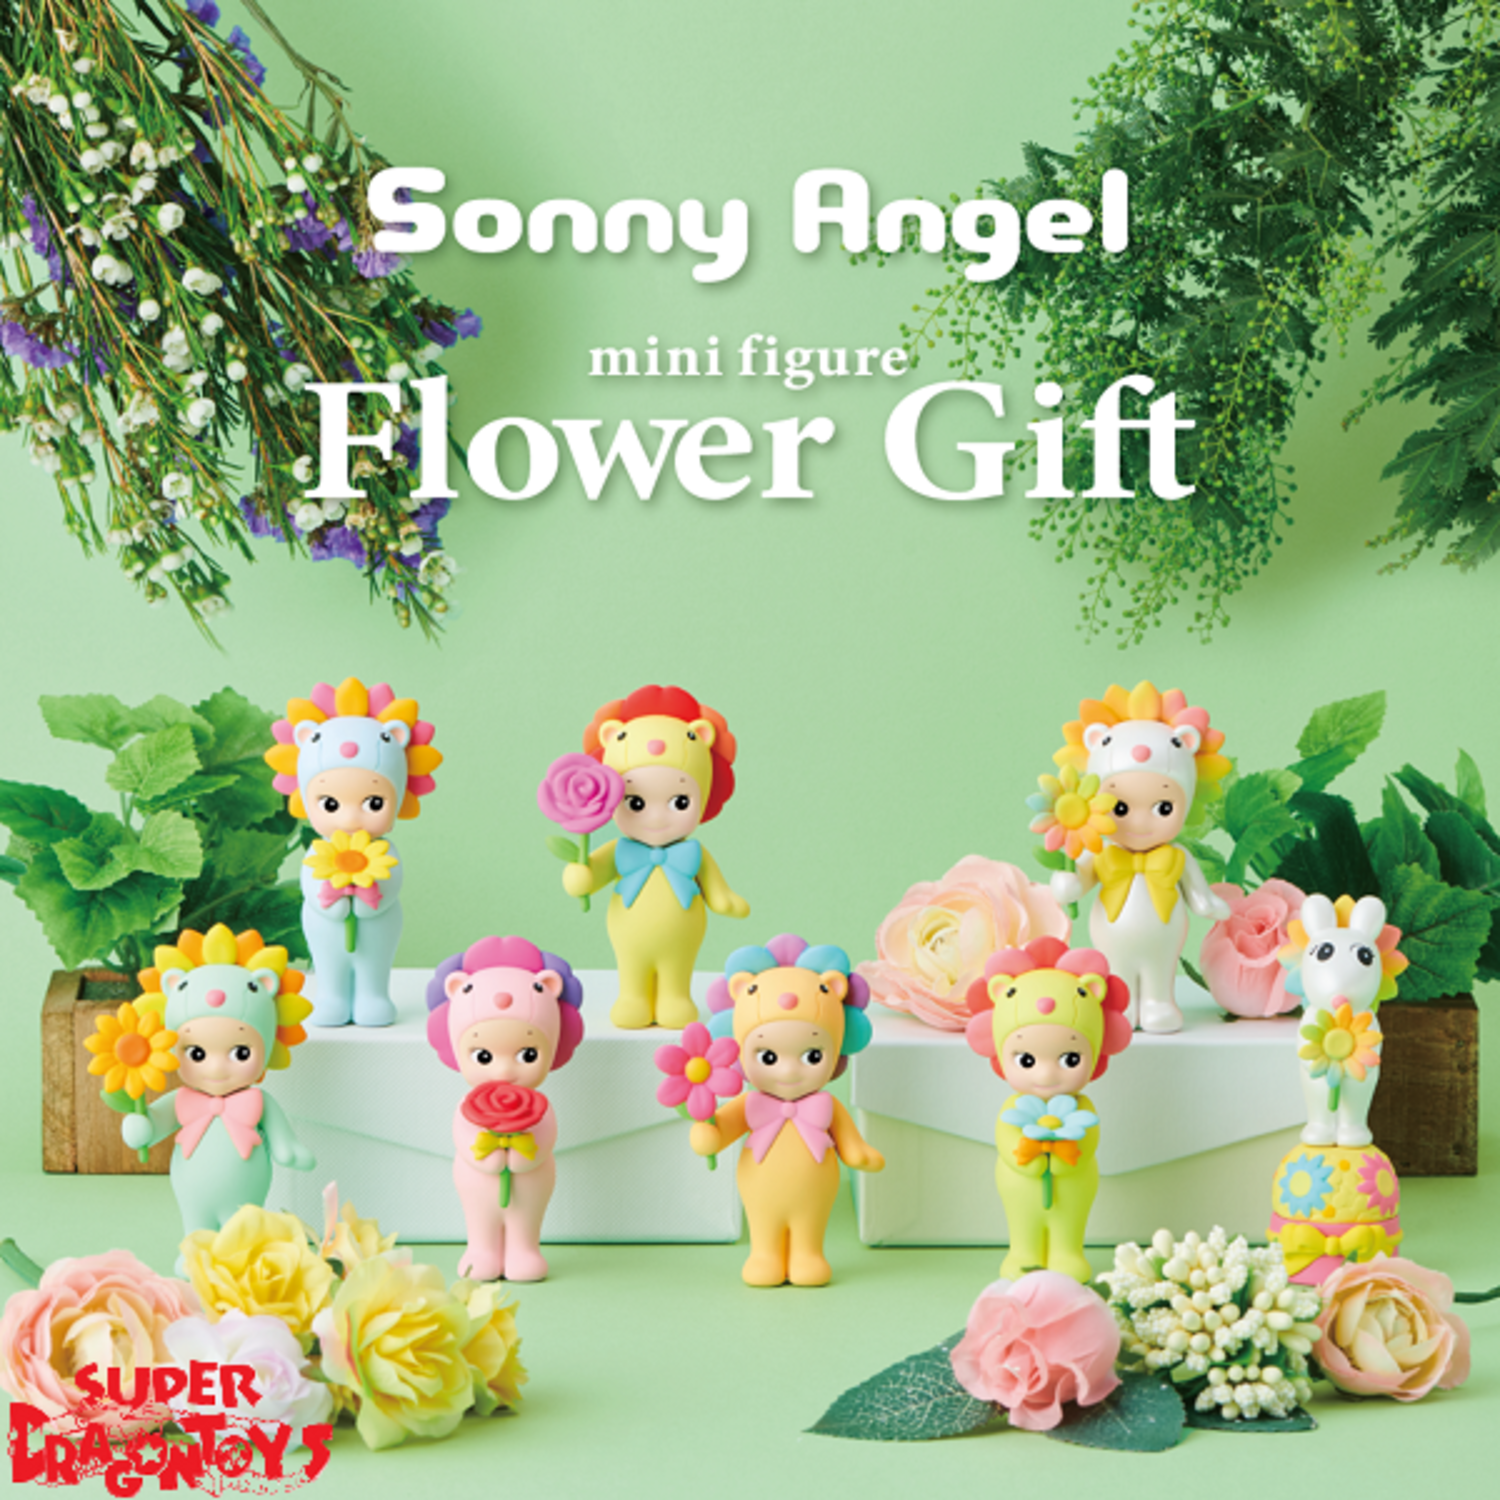 SONNY ANGEL [FLOWER GIFT SERIES] - BLINDBOX MINI FIGURE